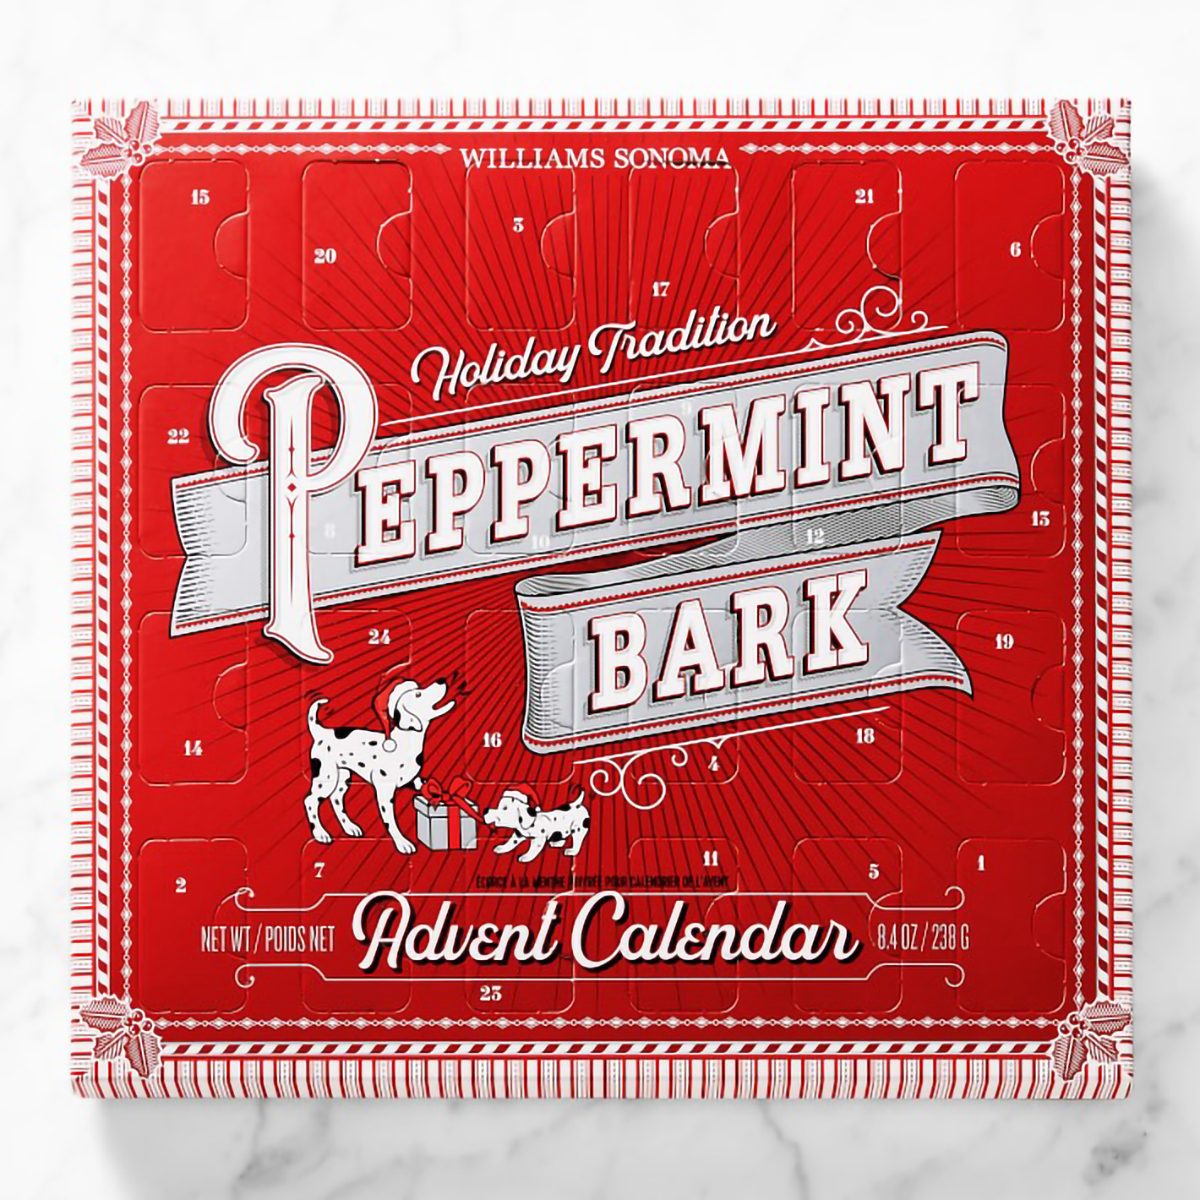 Williams Sonoma Peppermint Bark Chocolate Advent Calendar